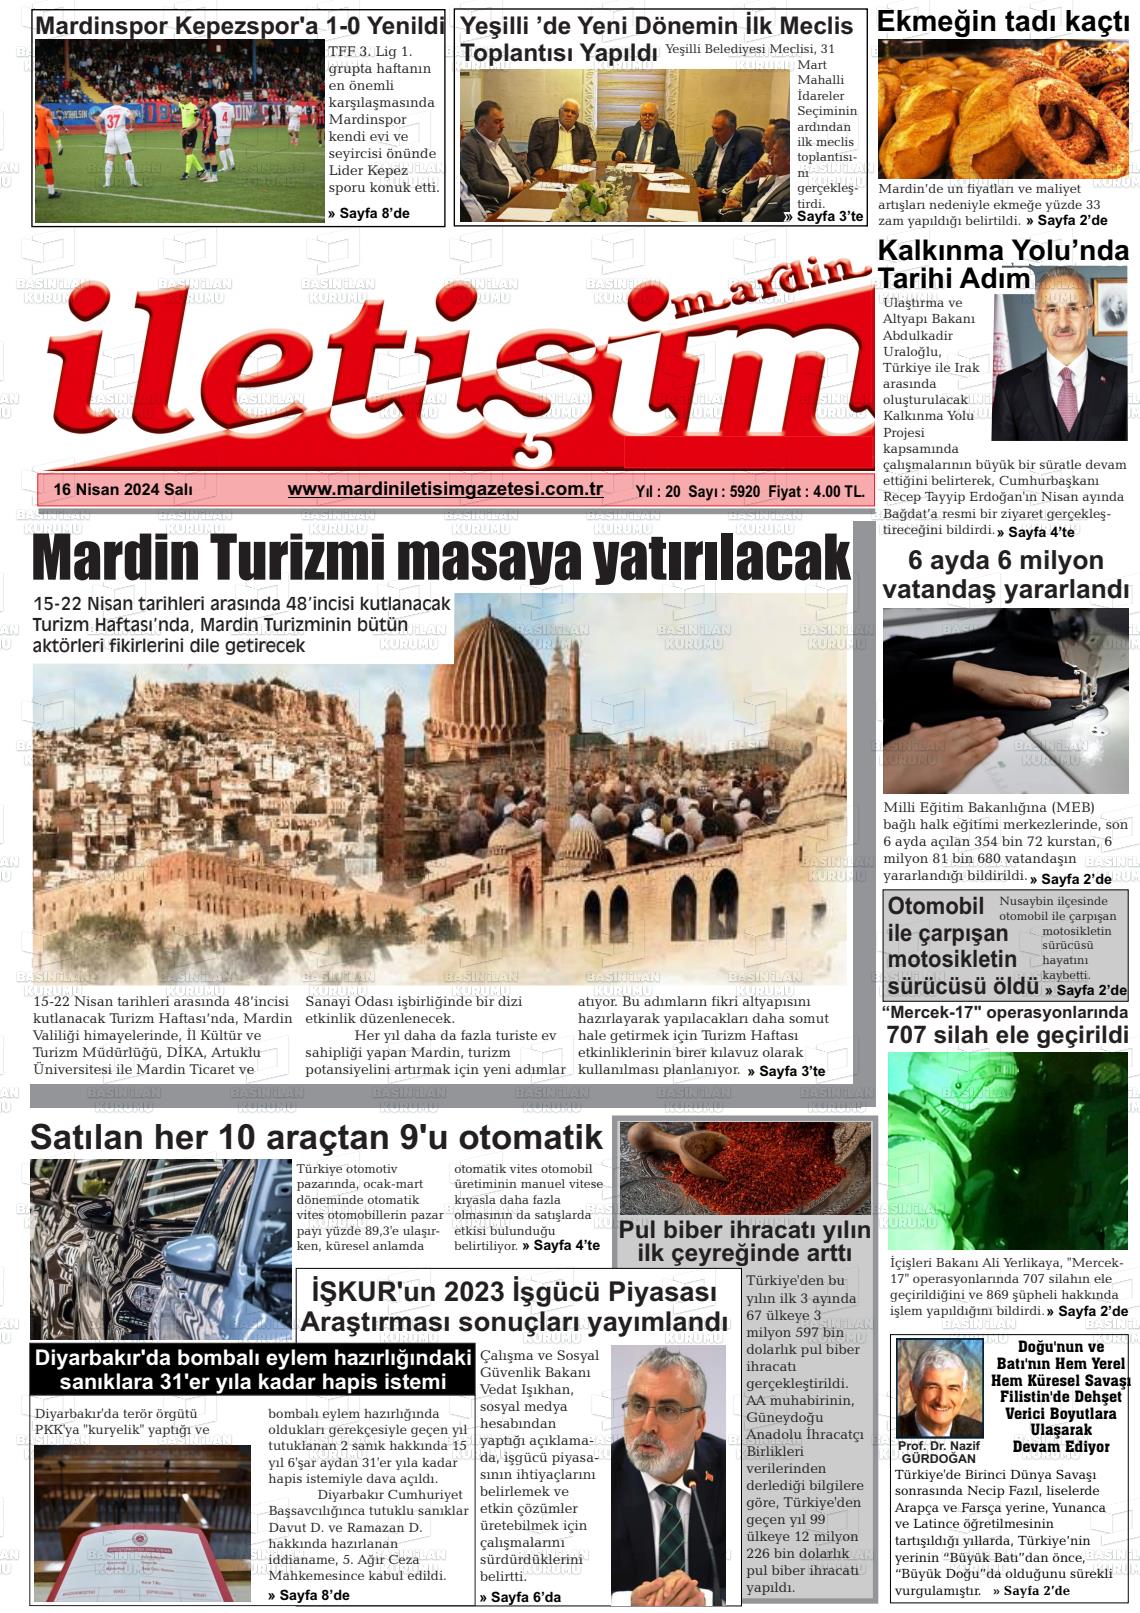 18 Nisan 2024 Mardin İletişim Gazete Manşeti